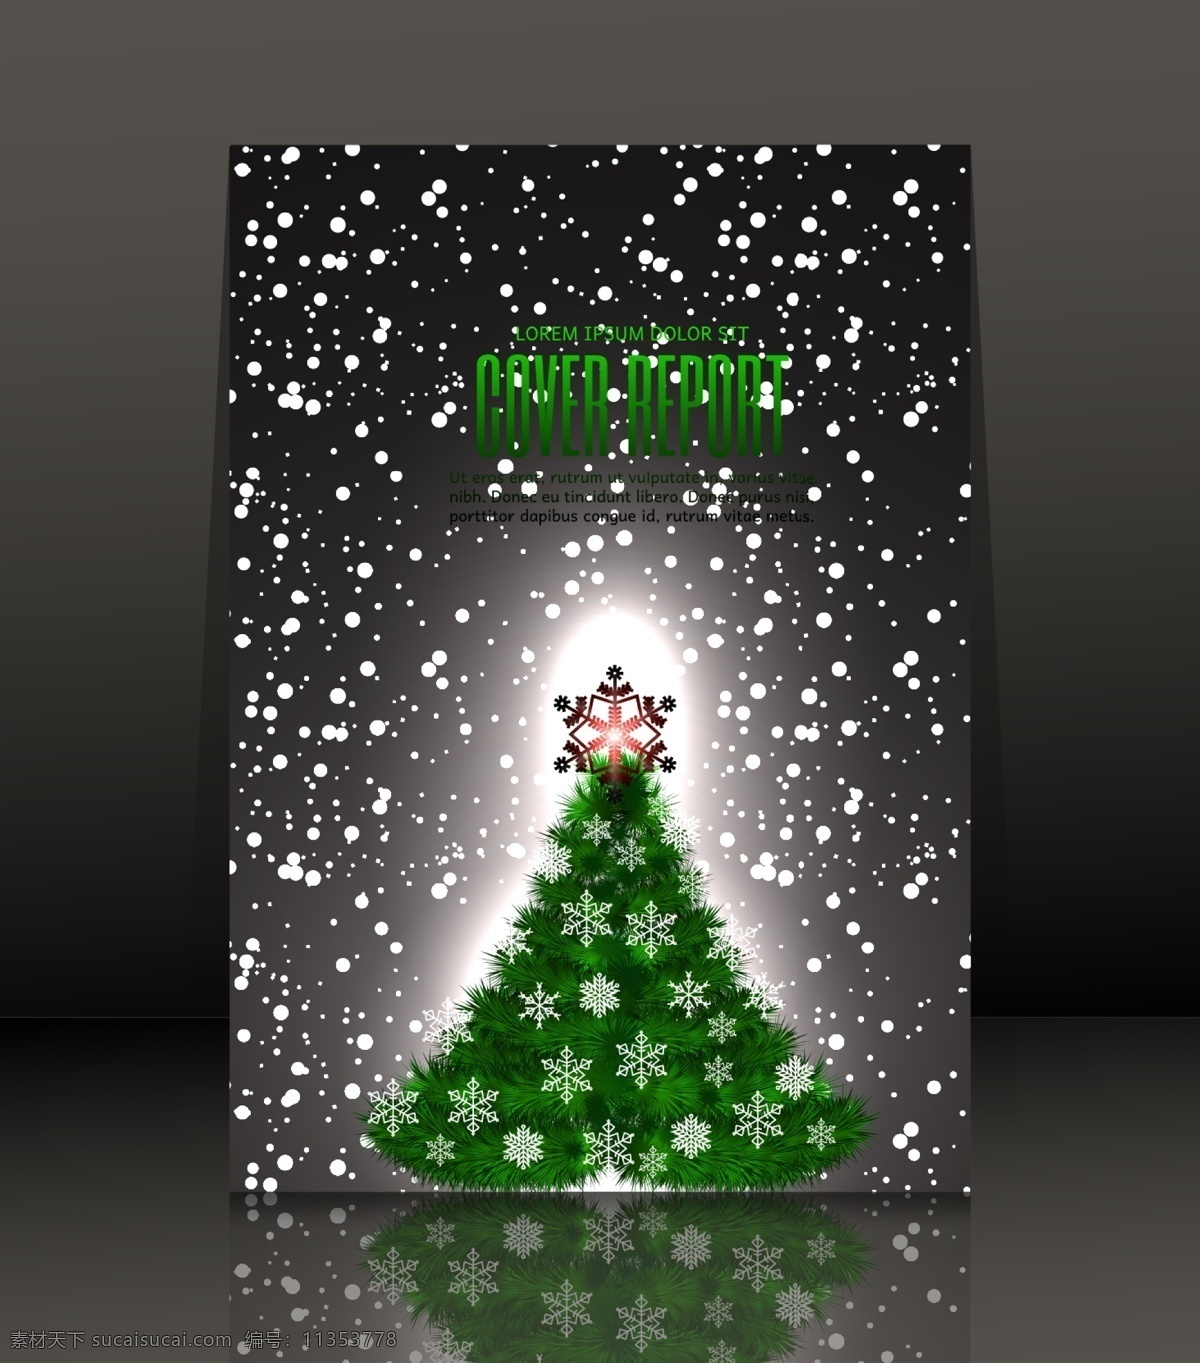 雪景 圣诞树 卡通 矢量 矢量素材 设计素材 背景素材